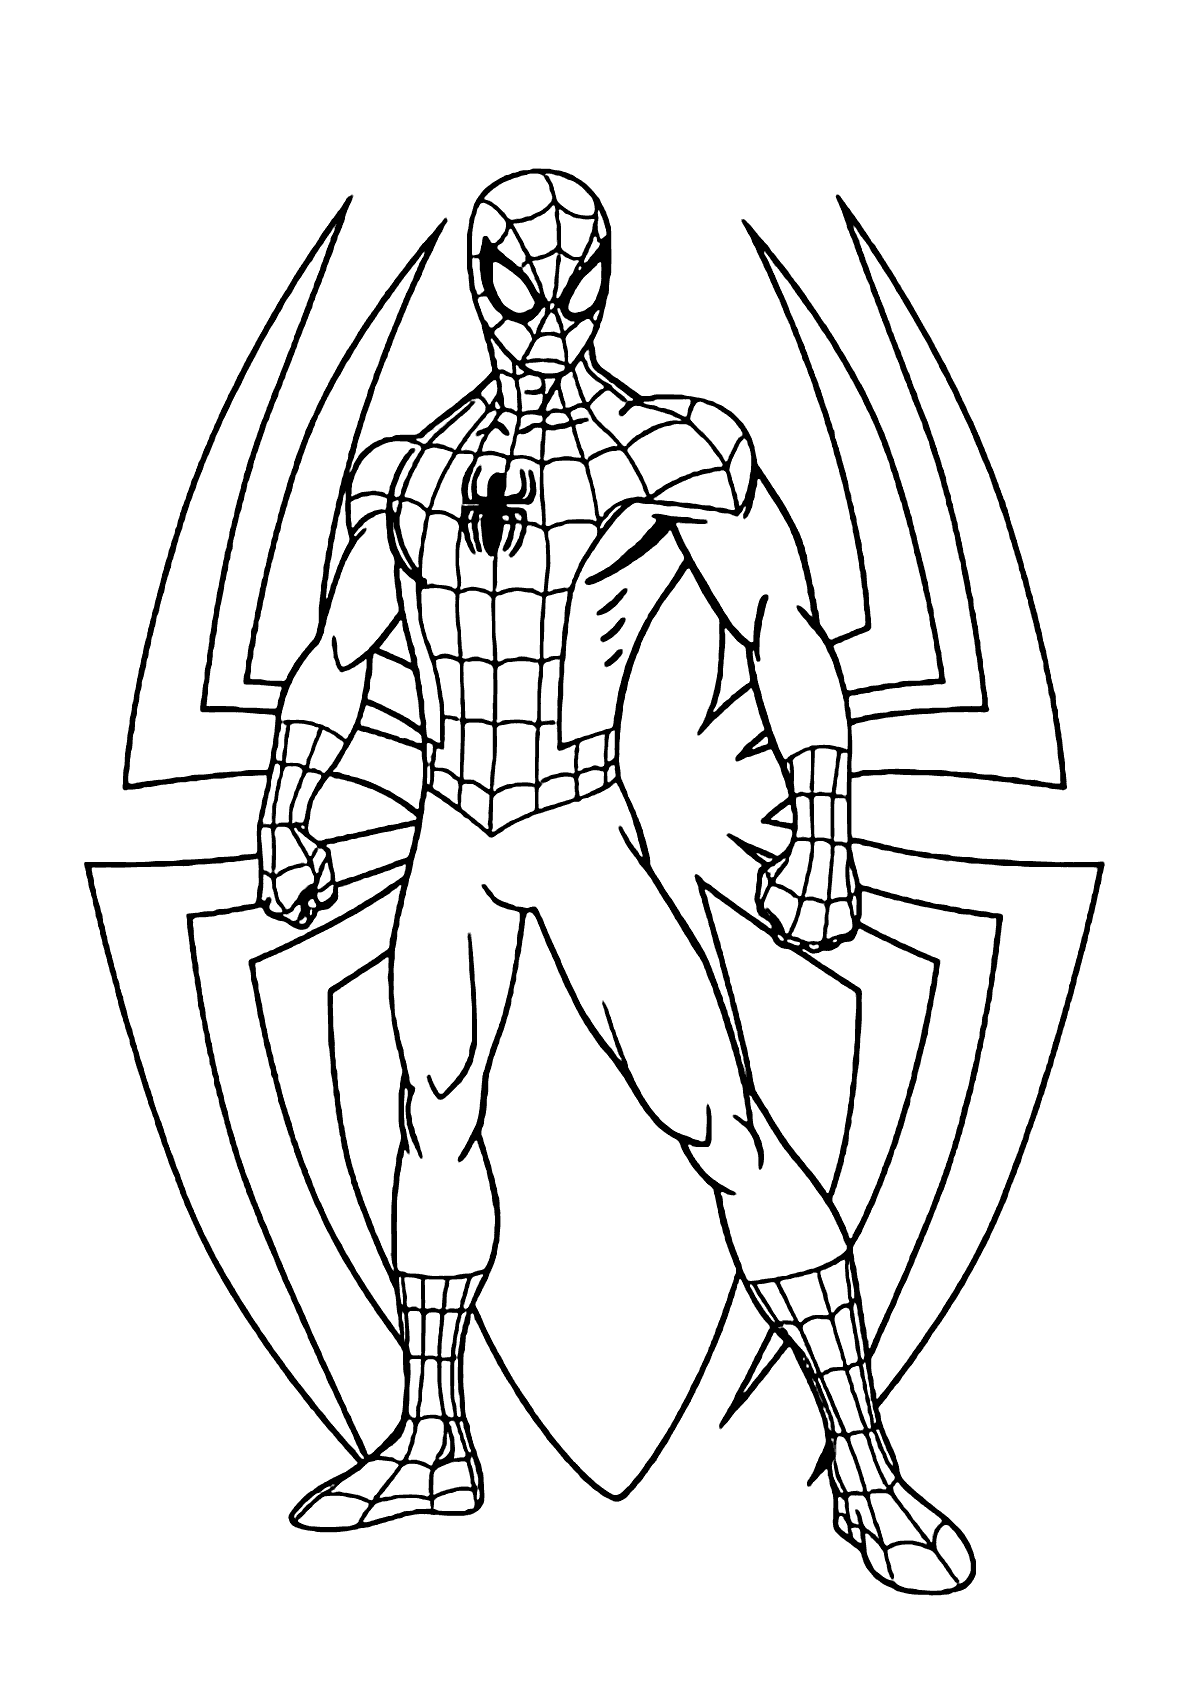 Desenhe e Divirta-se: Colorindo o Homem-Aranha para uma Aventura Criativa!